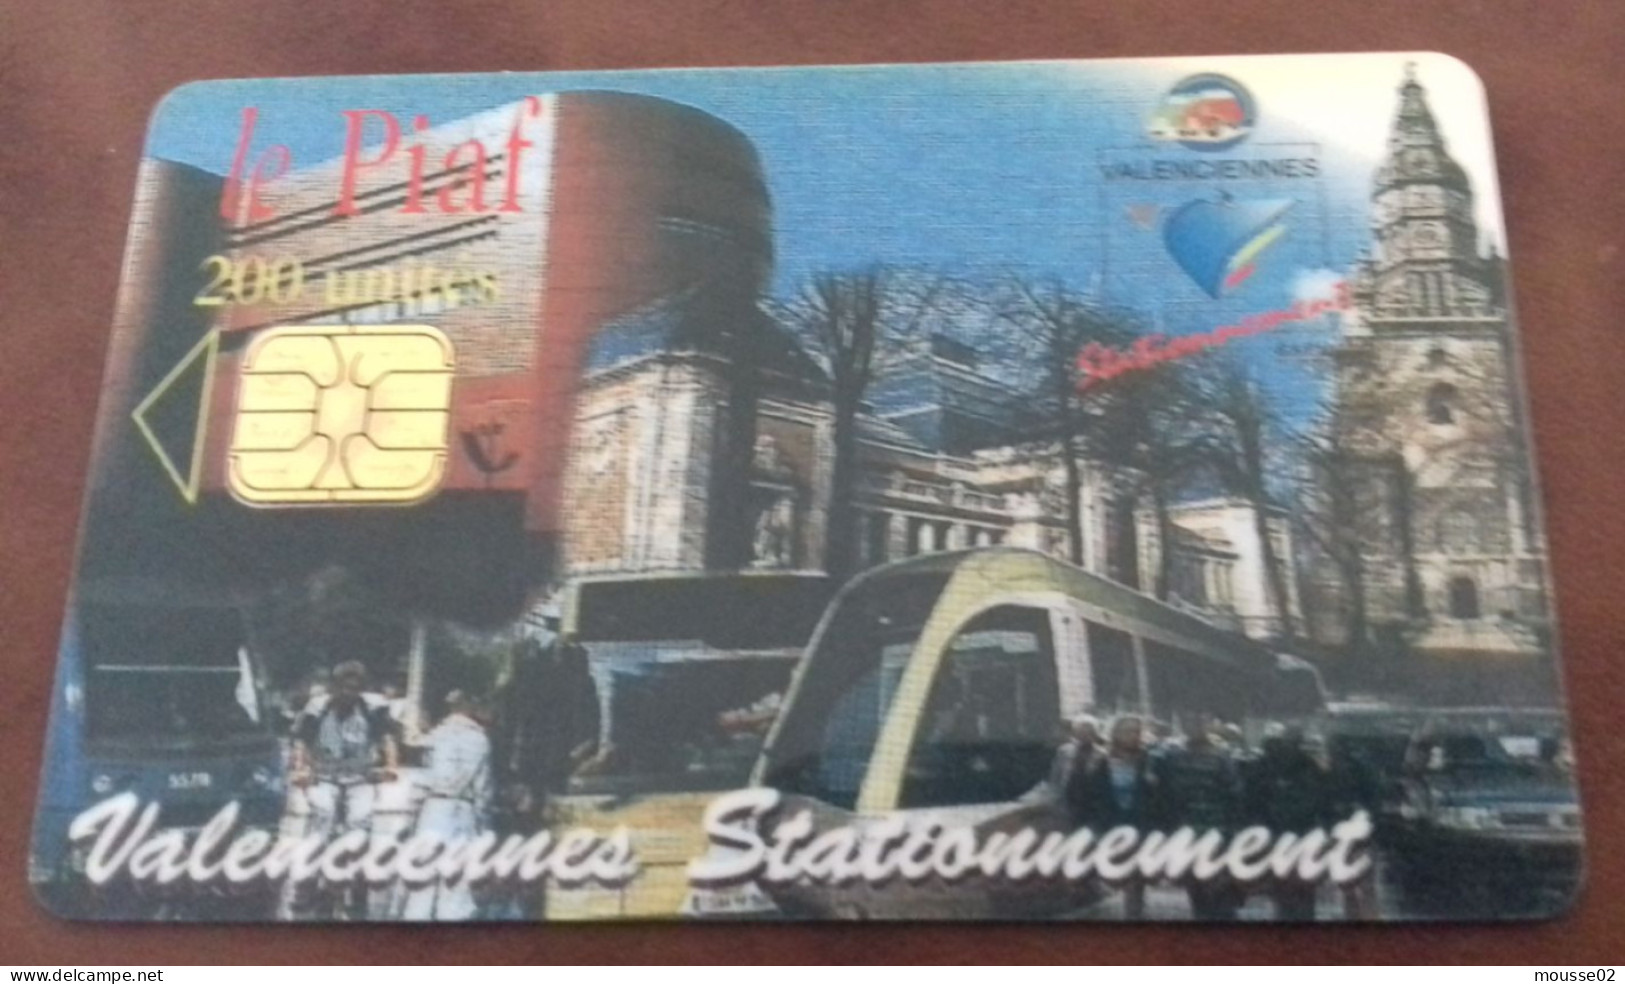 Carte De Stationnement  PIAF VALENCIENNES DU 01/ 2004 - Parkkarten